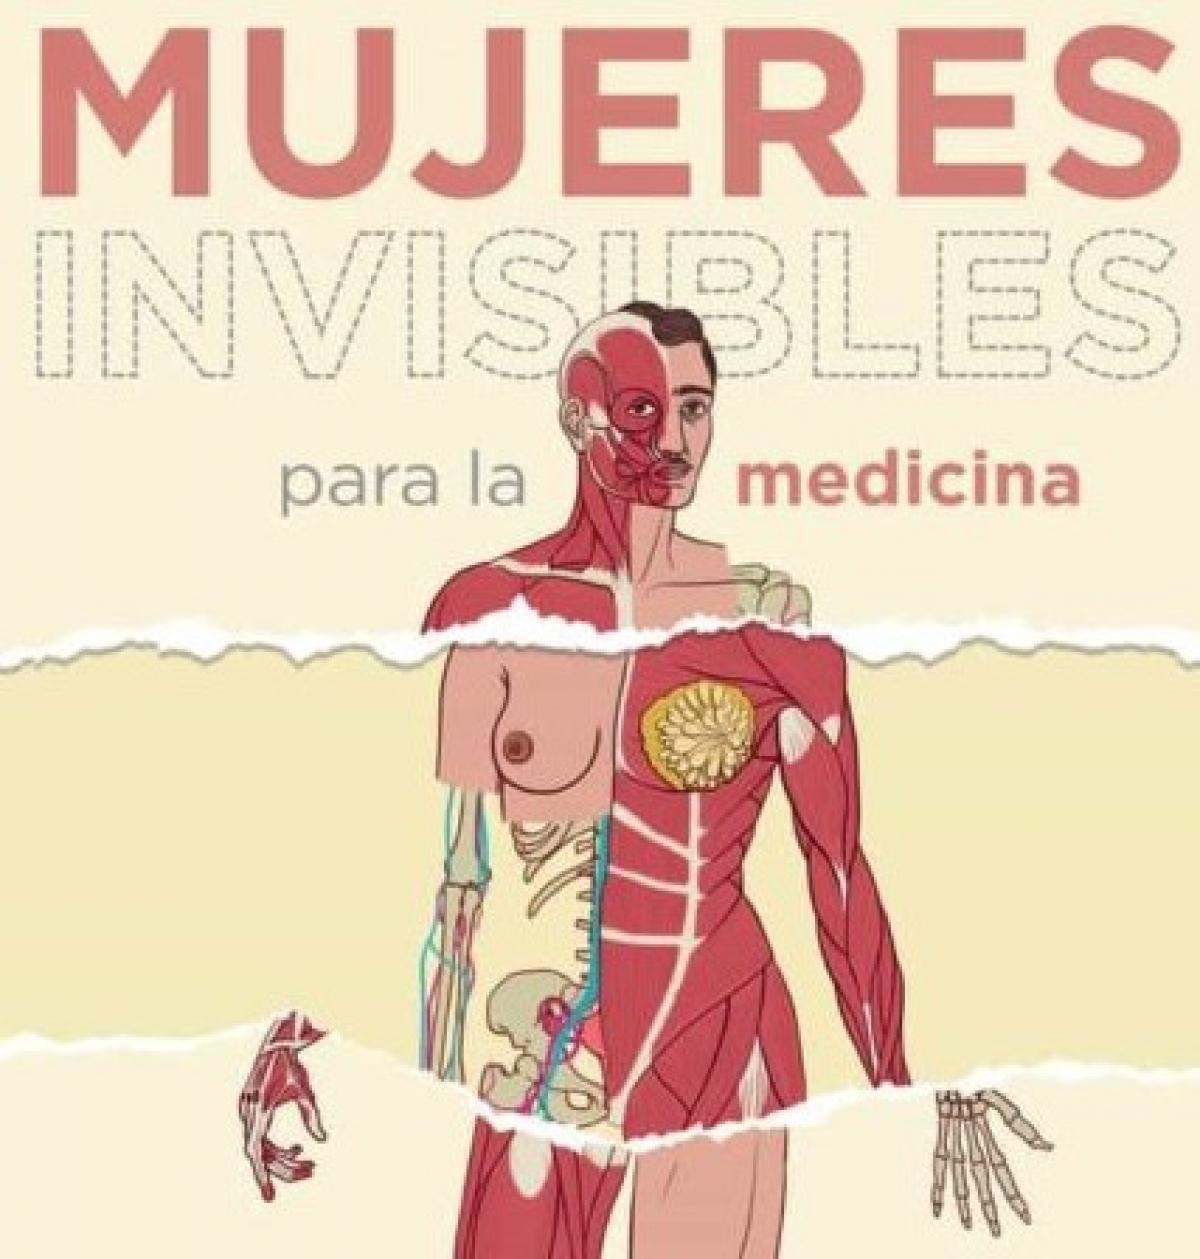 Detalle de la portada del libro "Mujeres invisibles para la medicina. Desvelando nuestra salud", de Carme Valls.